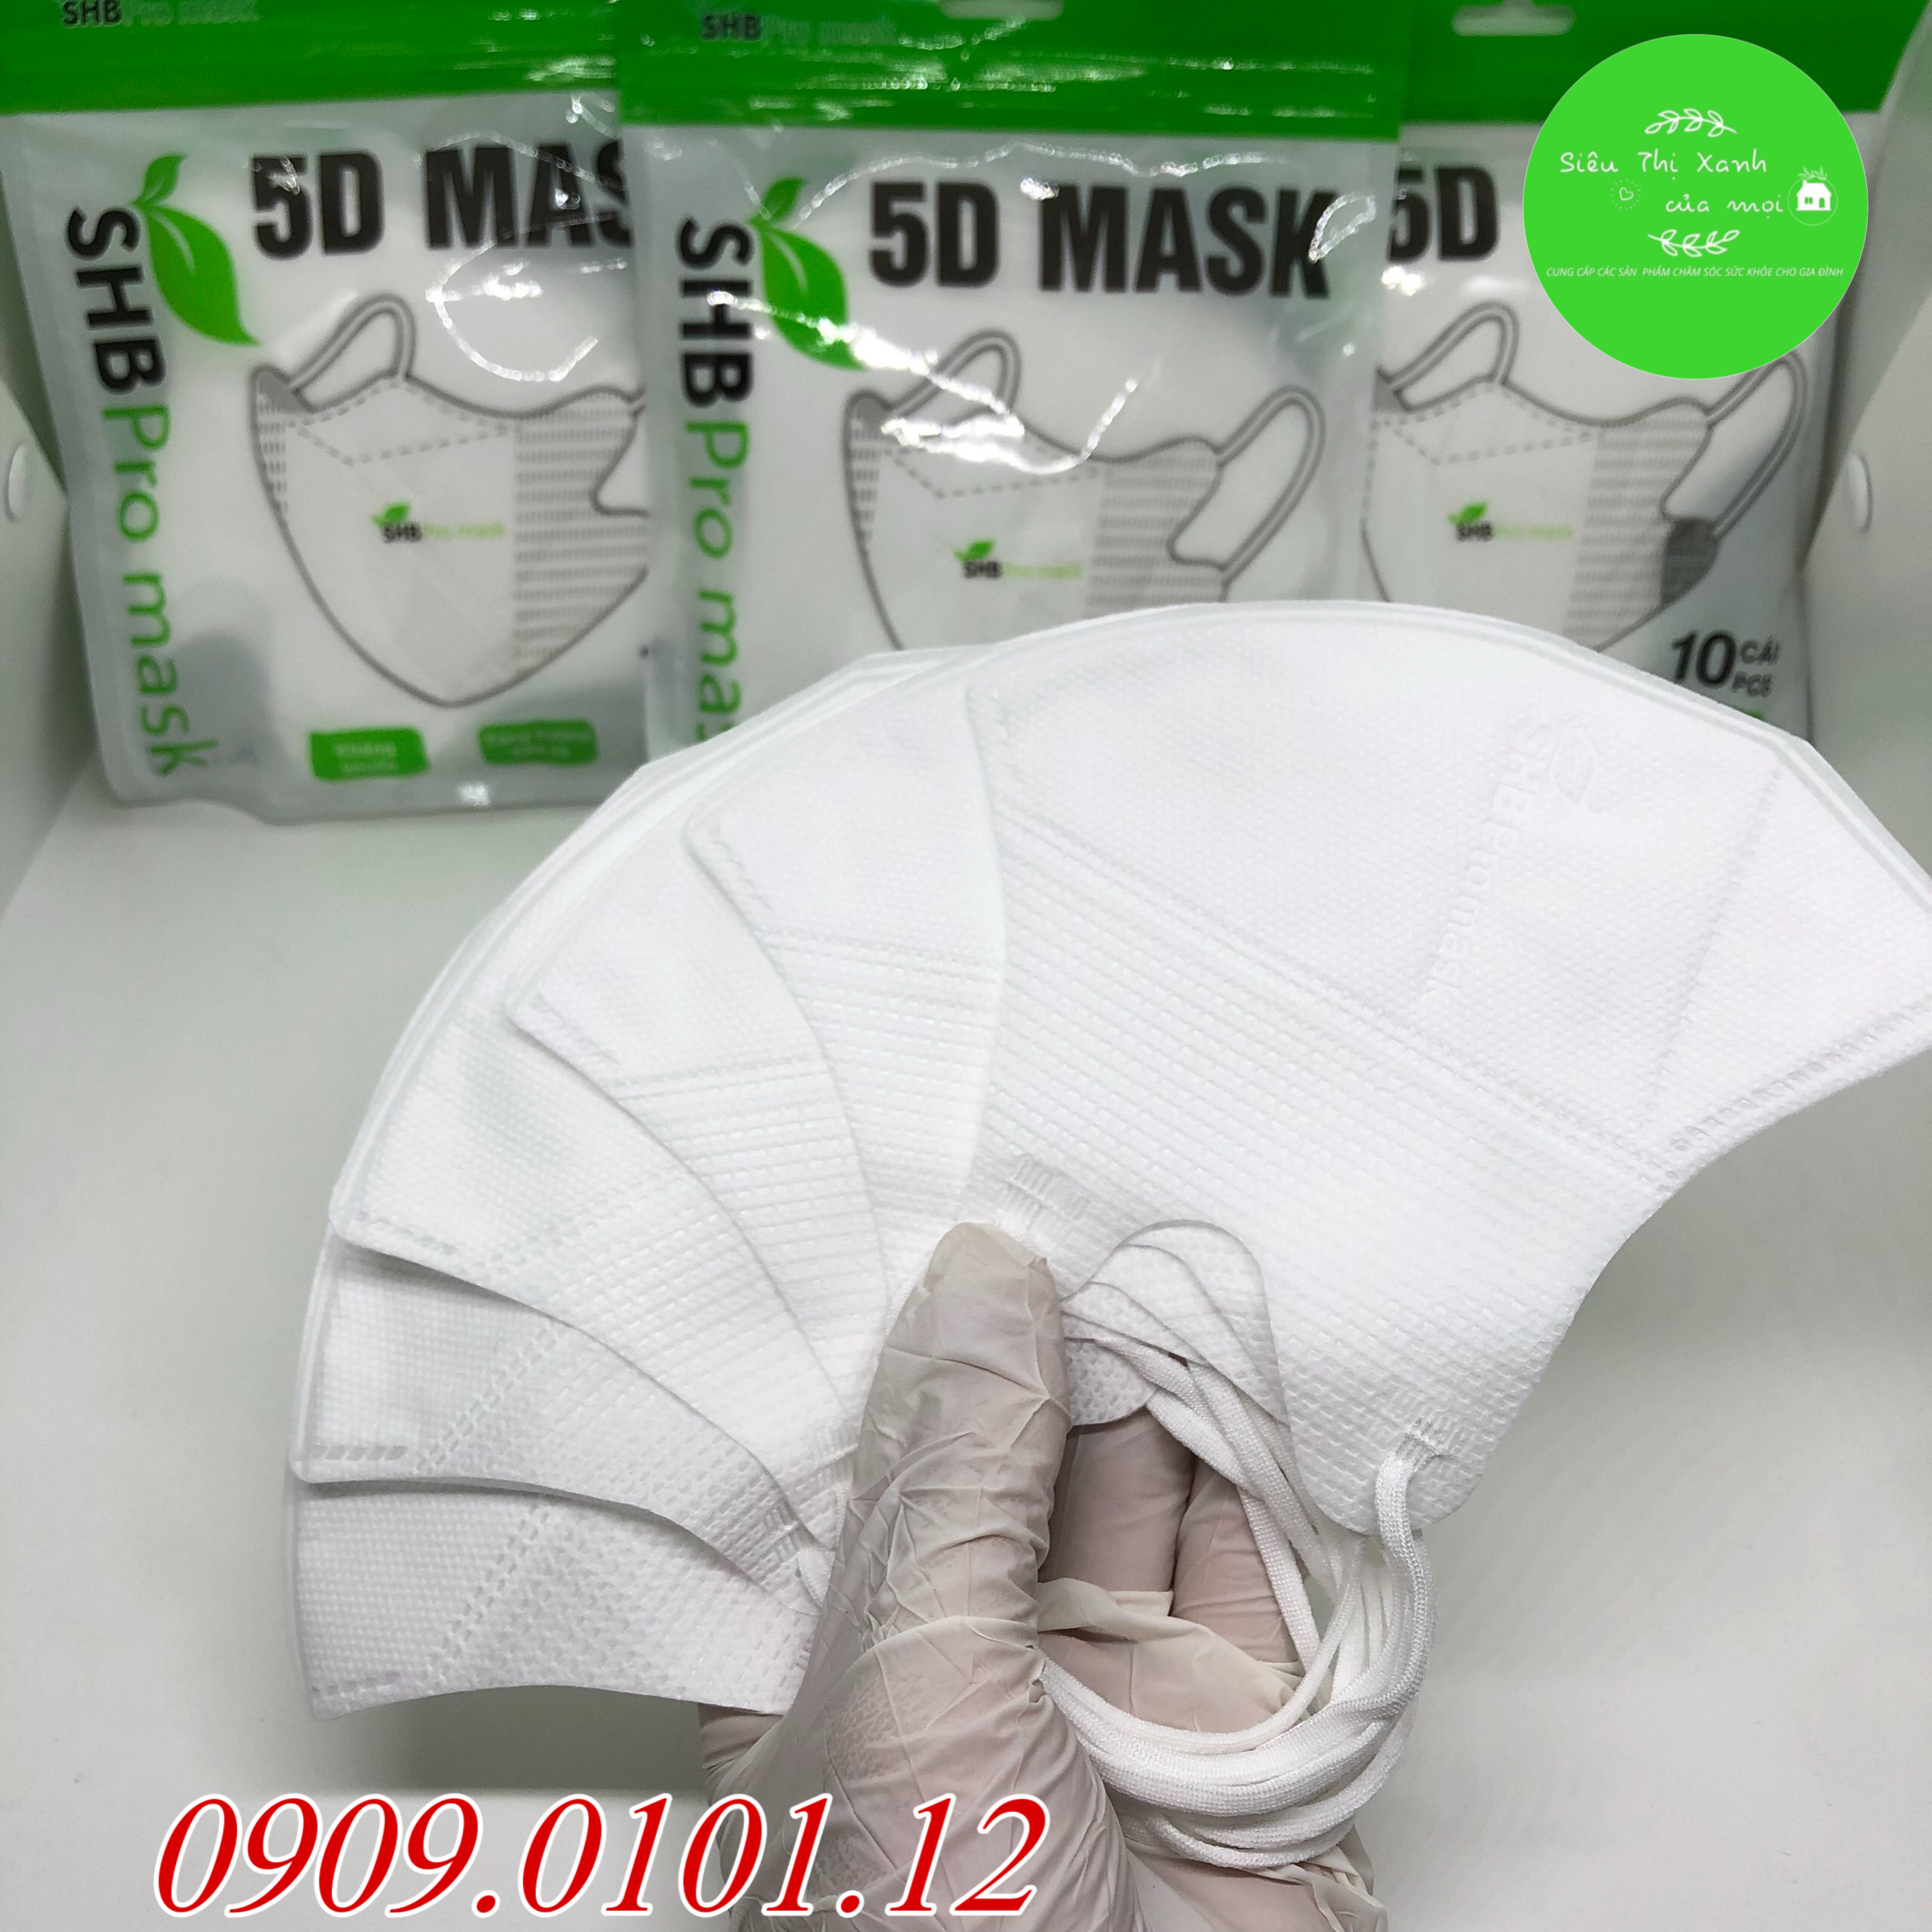 Khẩu trang 5d SHB pro mask nguyên thùng 200 cái, 5d mask hàn quốc cao cấp